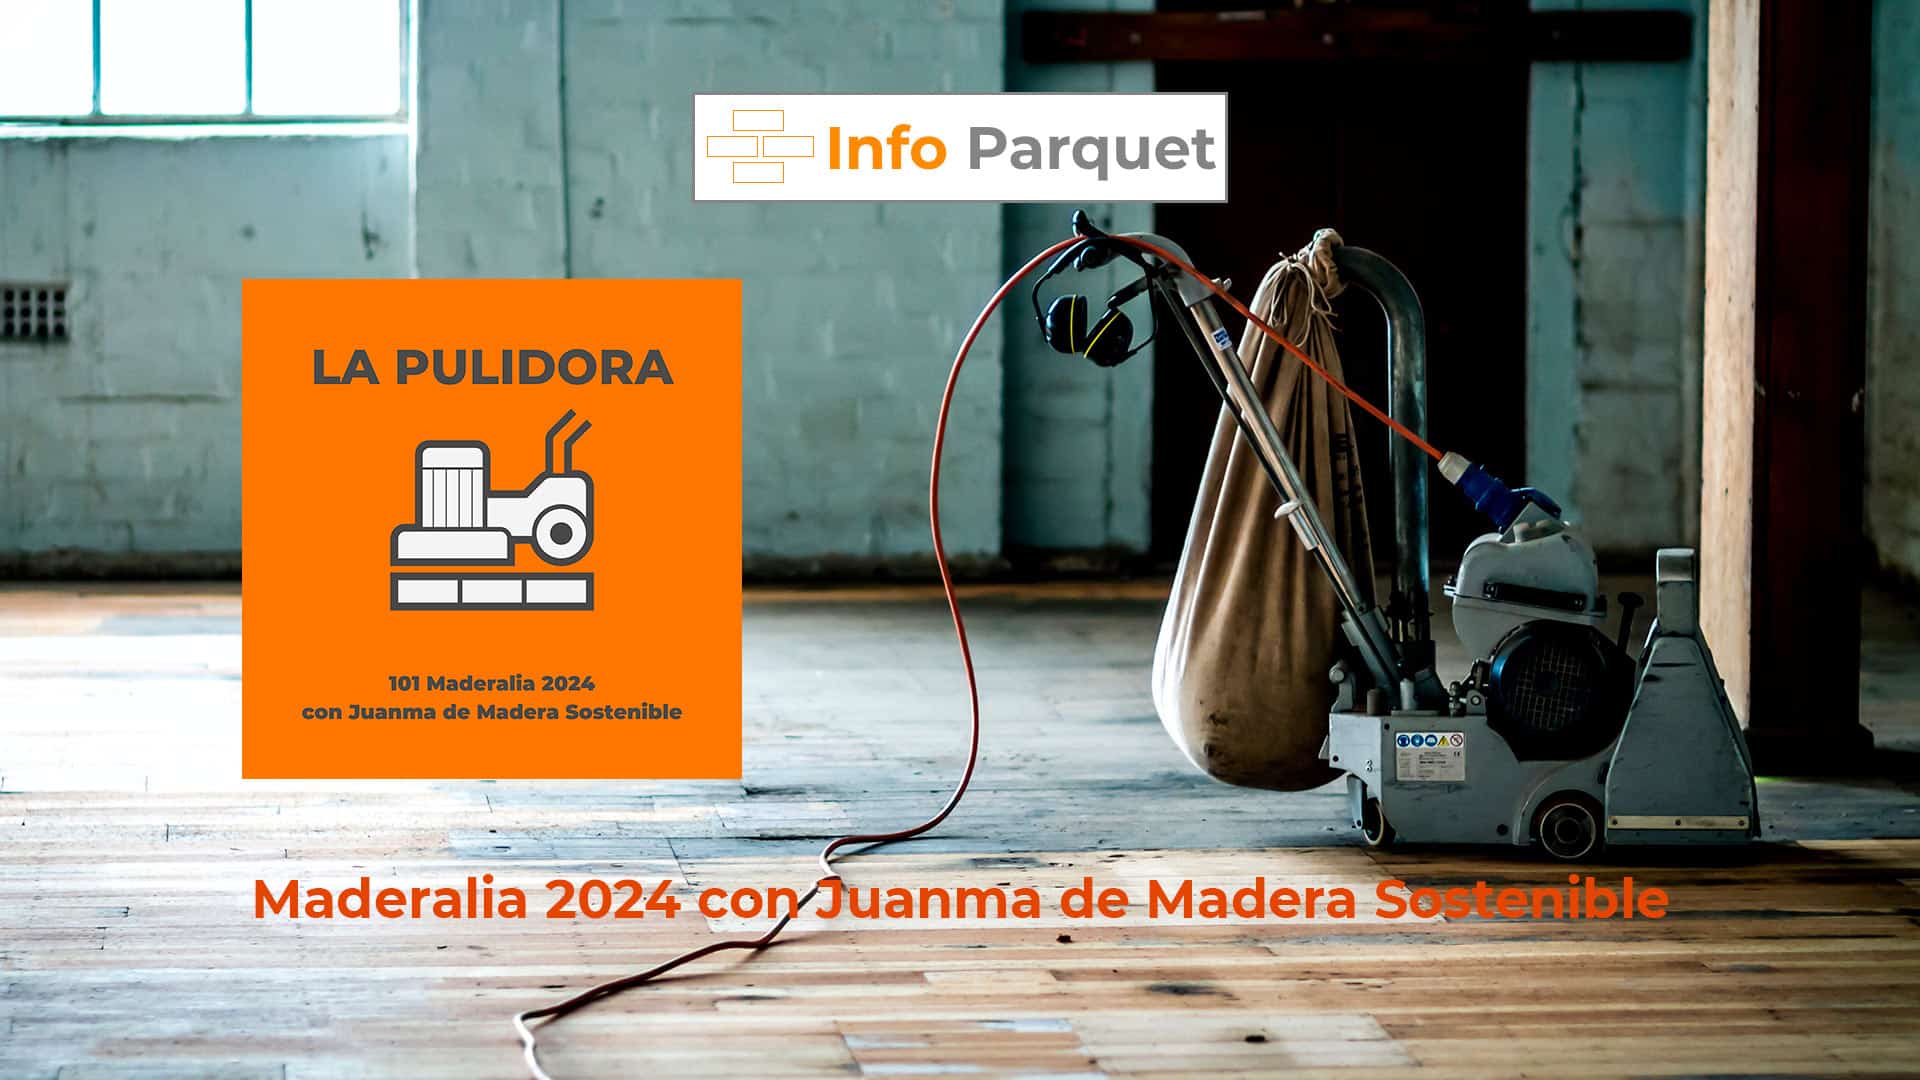 Maderalia 2024 con Juanma de Madera Sostenible